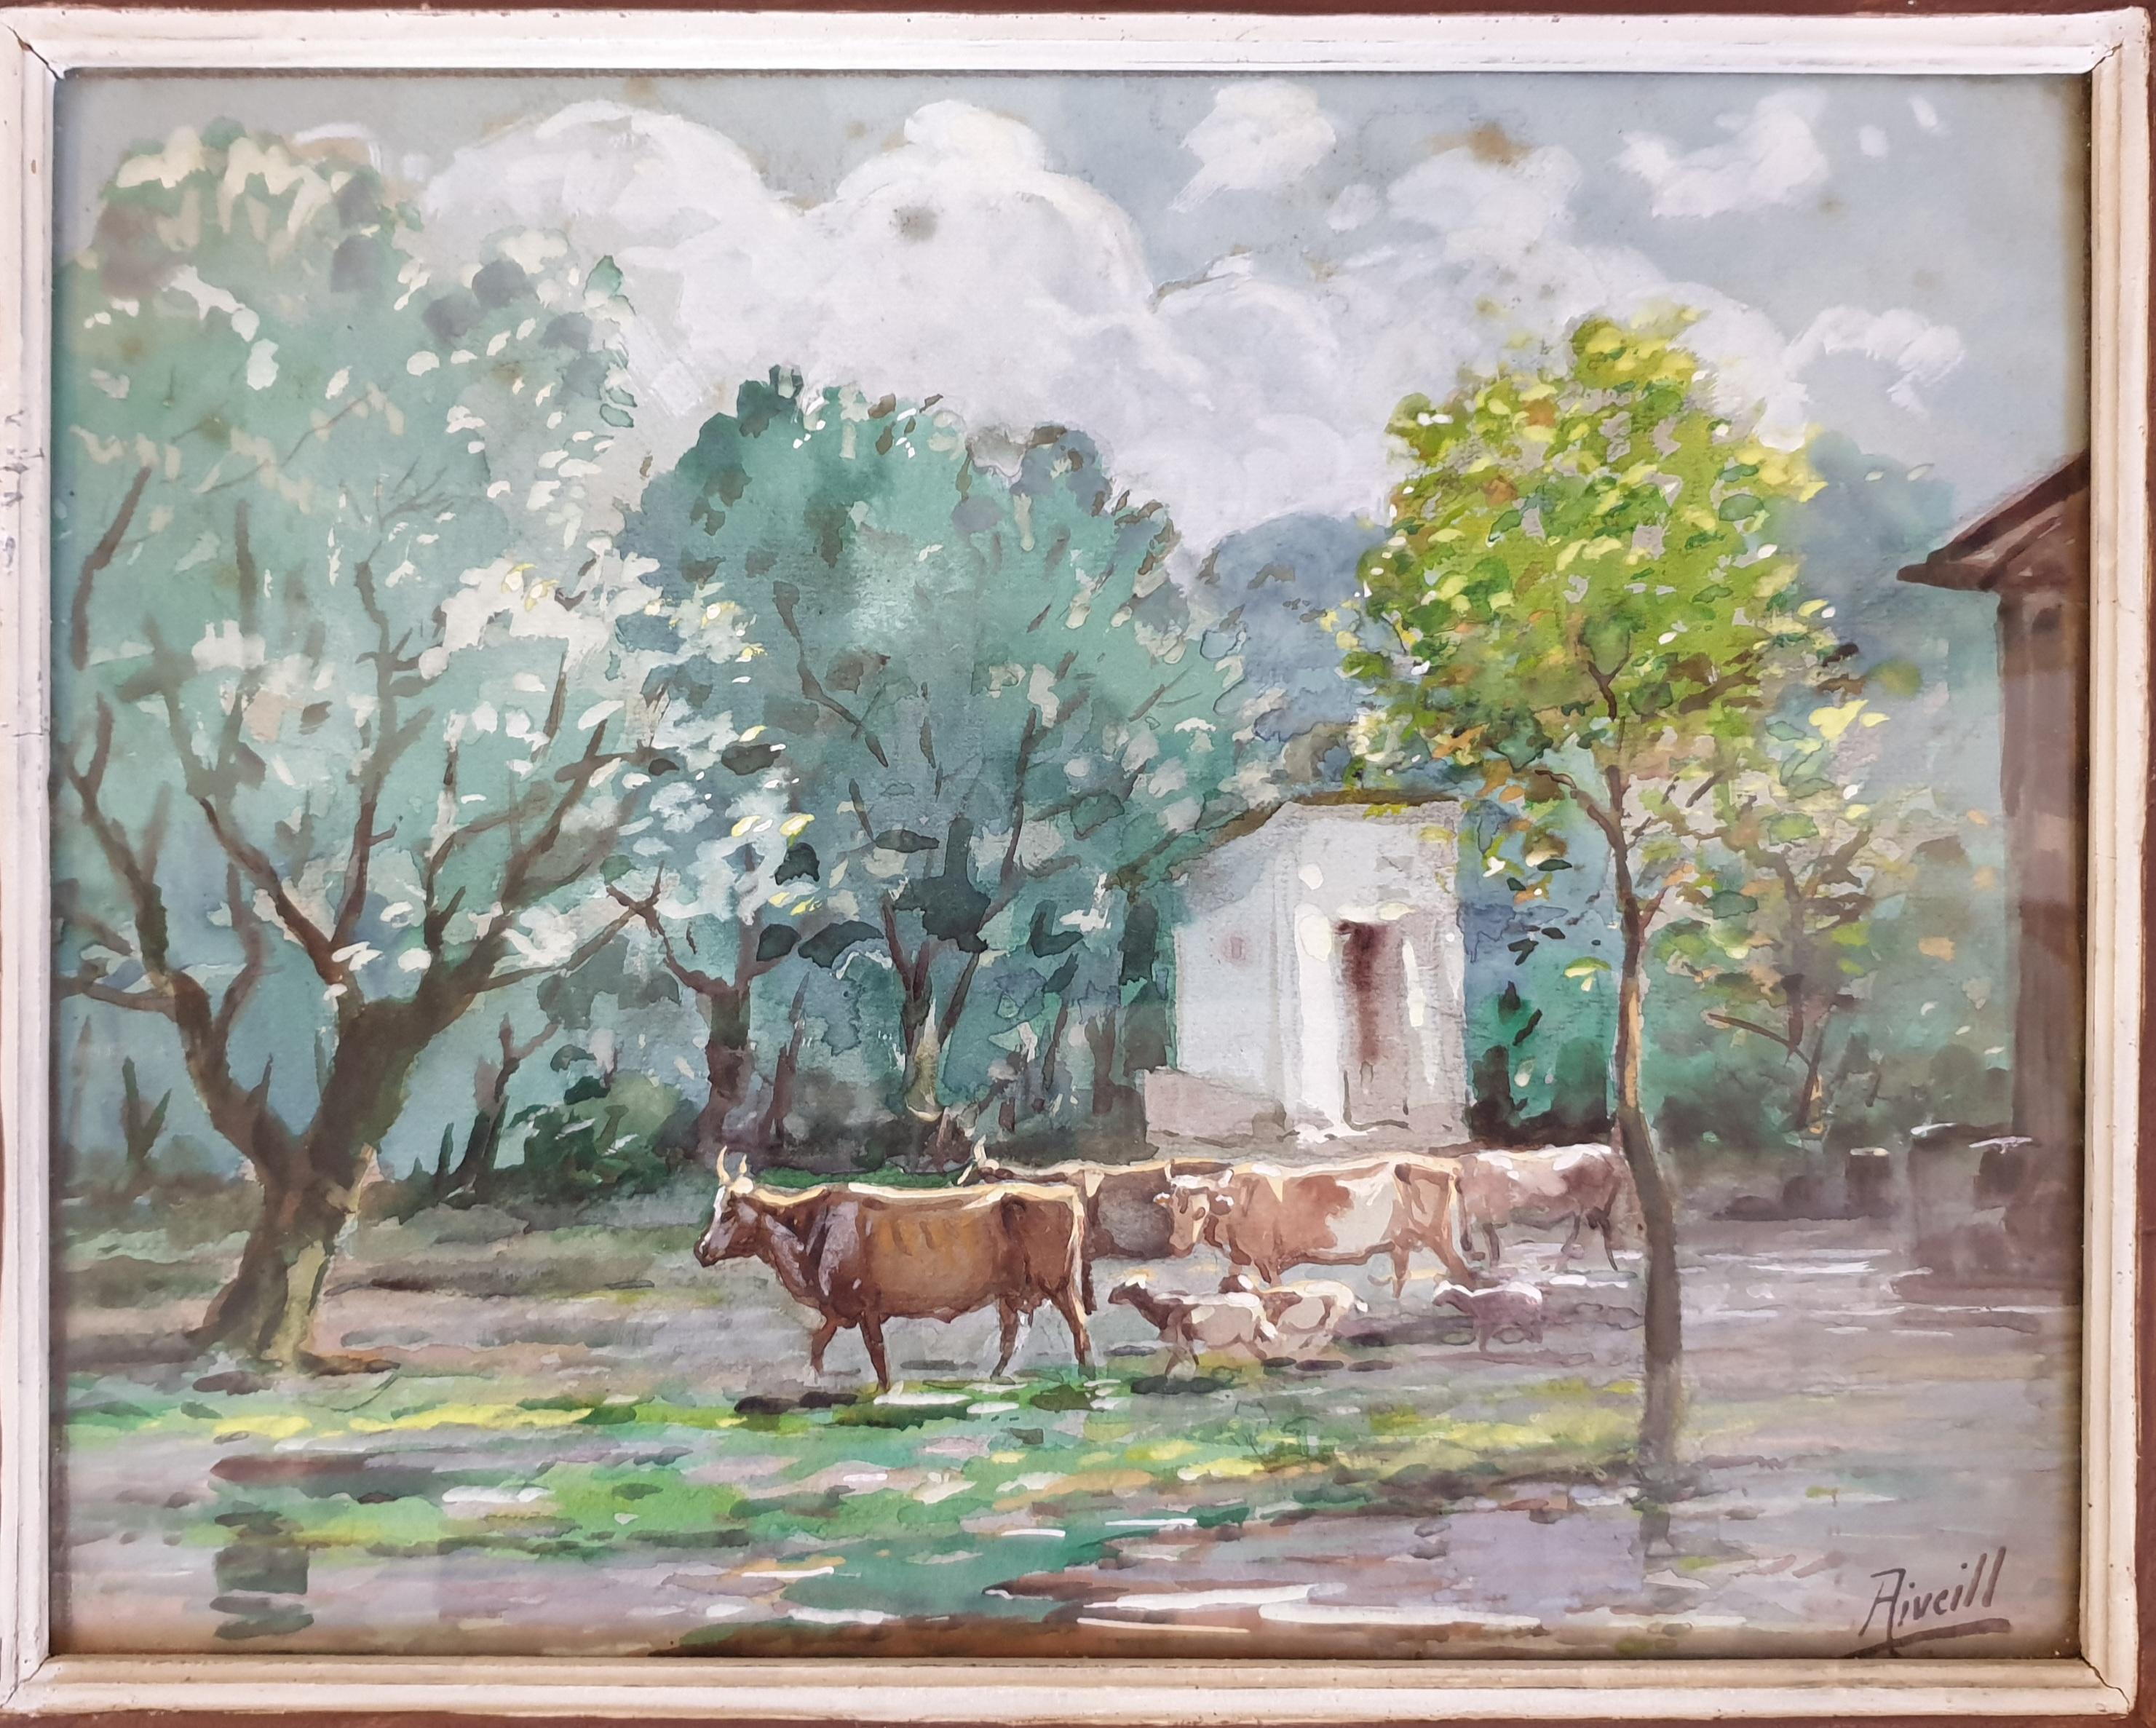 Bouteilles, chèvres et moutons broutant, aquarelle orientaliste. - Réalisme Art par Aiveill